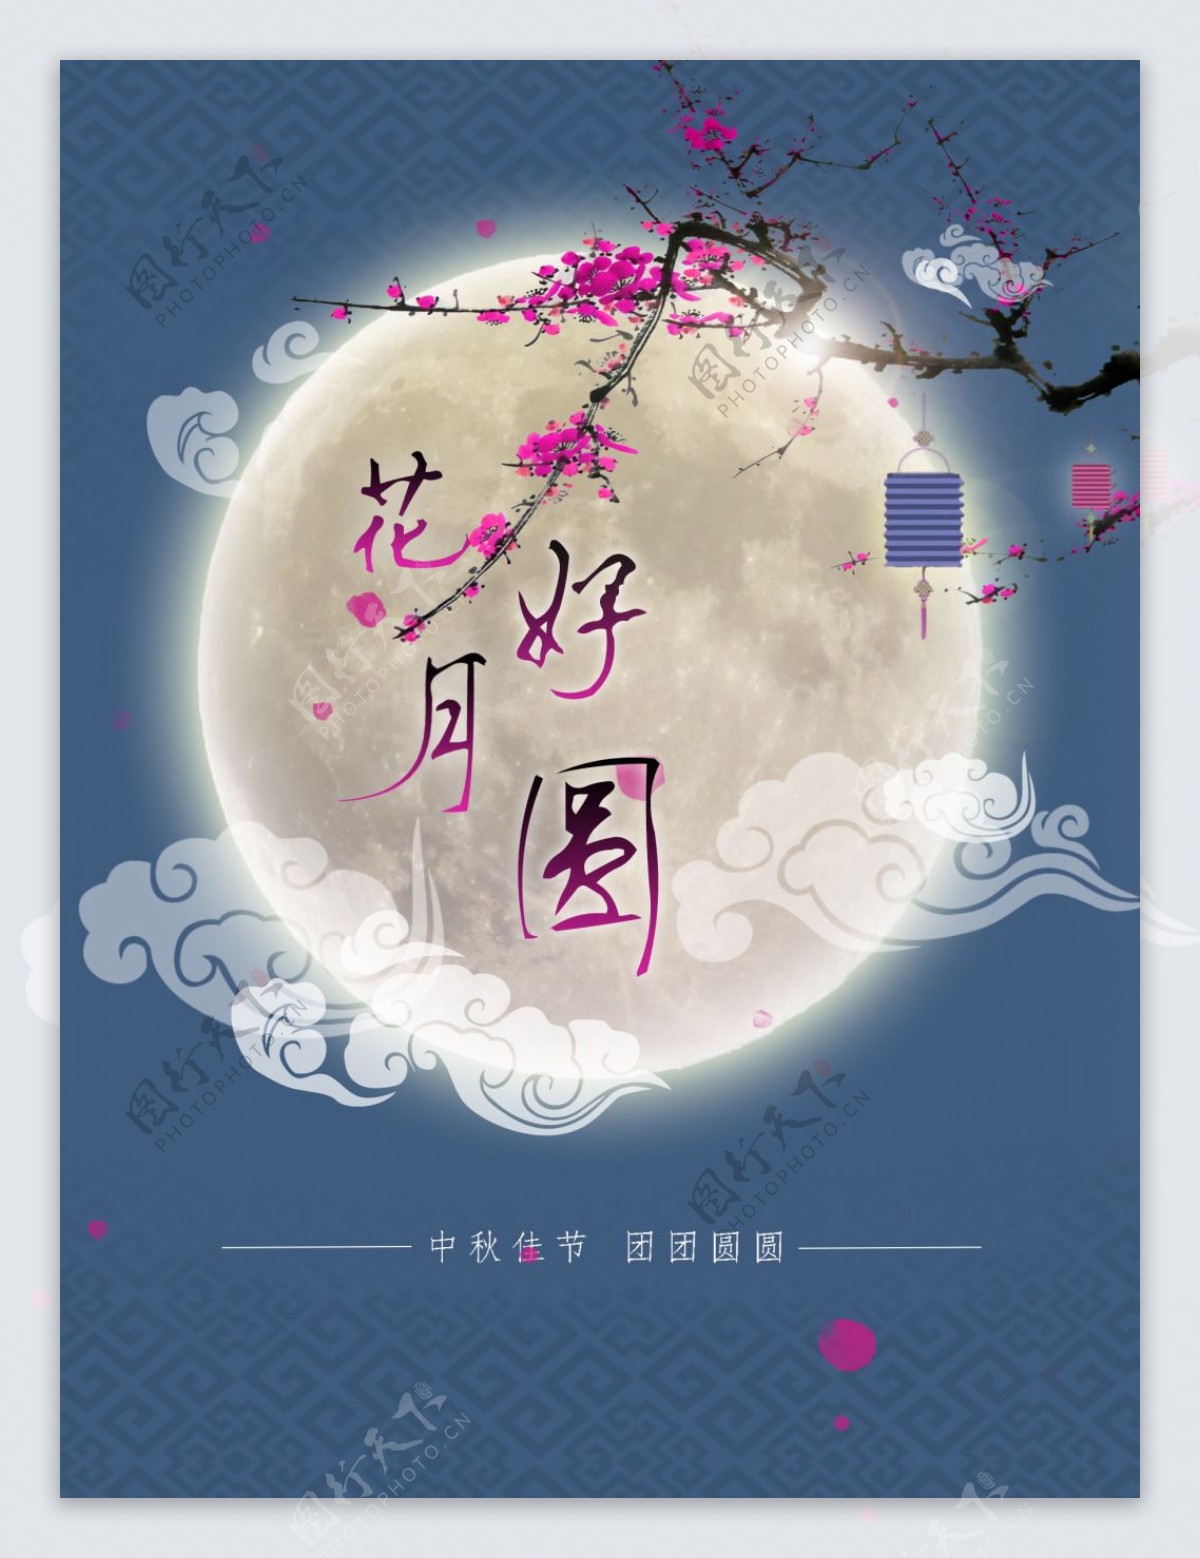 中秋节传统节日创意PSD原创素材海报